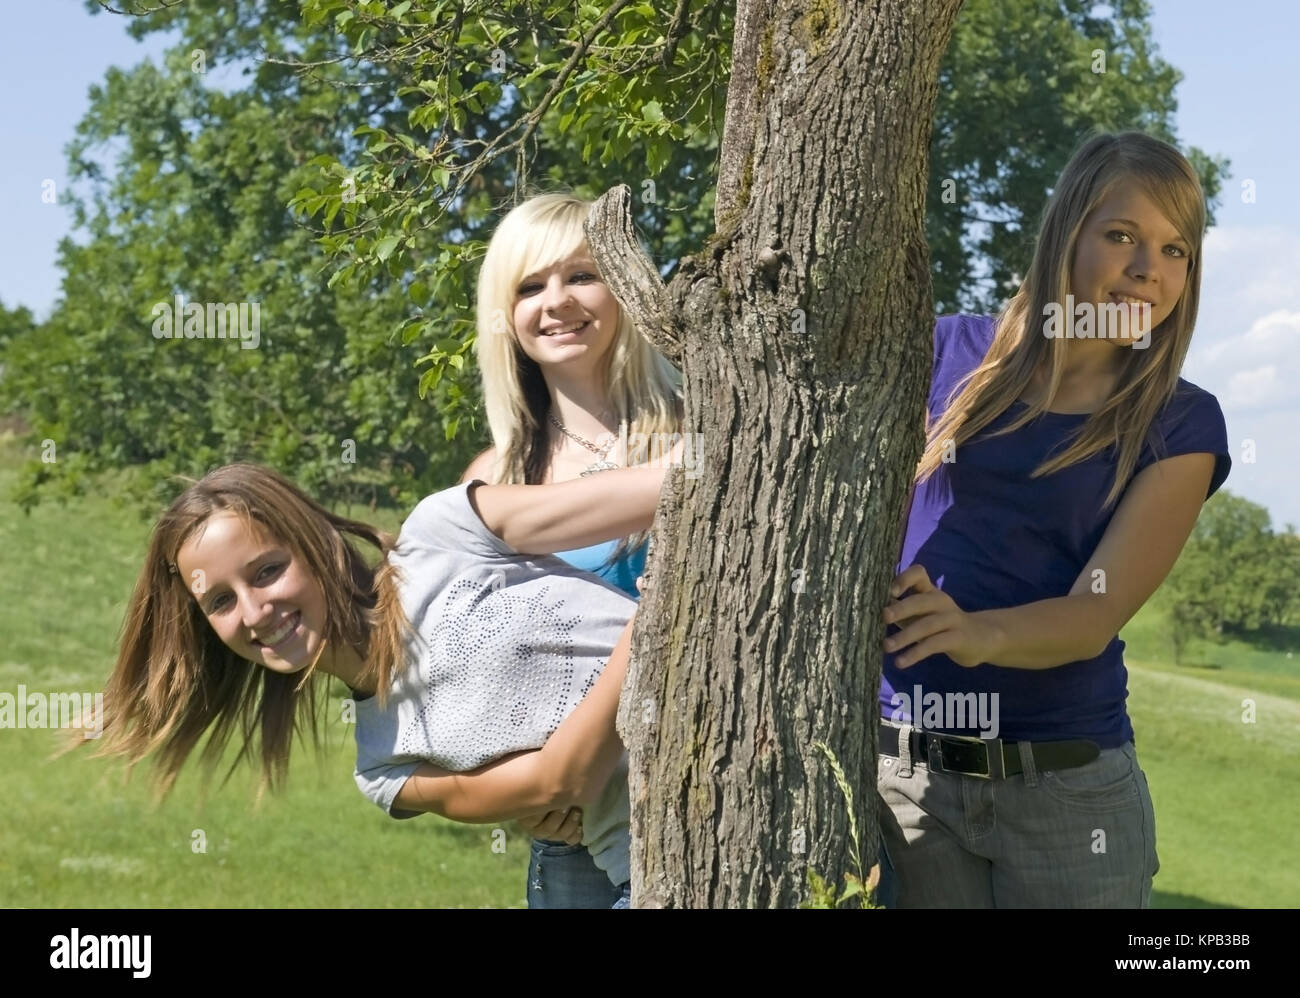 Model Release, Drei Jugendliche näher Schauen Hinter Baumstamm Hervor - drei Mädchen im Teenageralter außerhalb Stockfoto